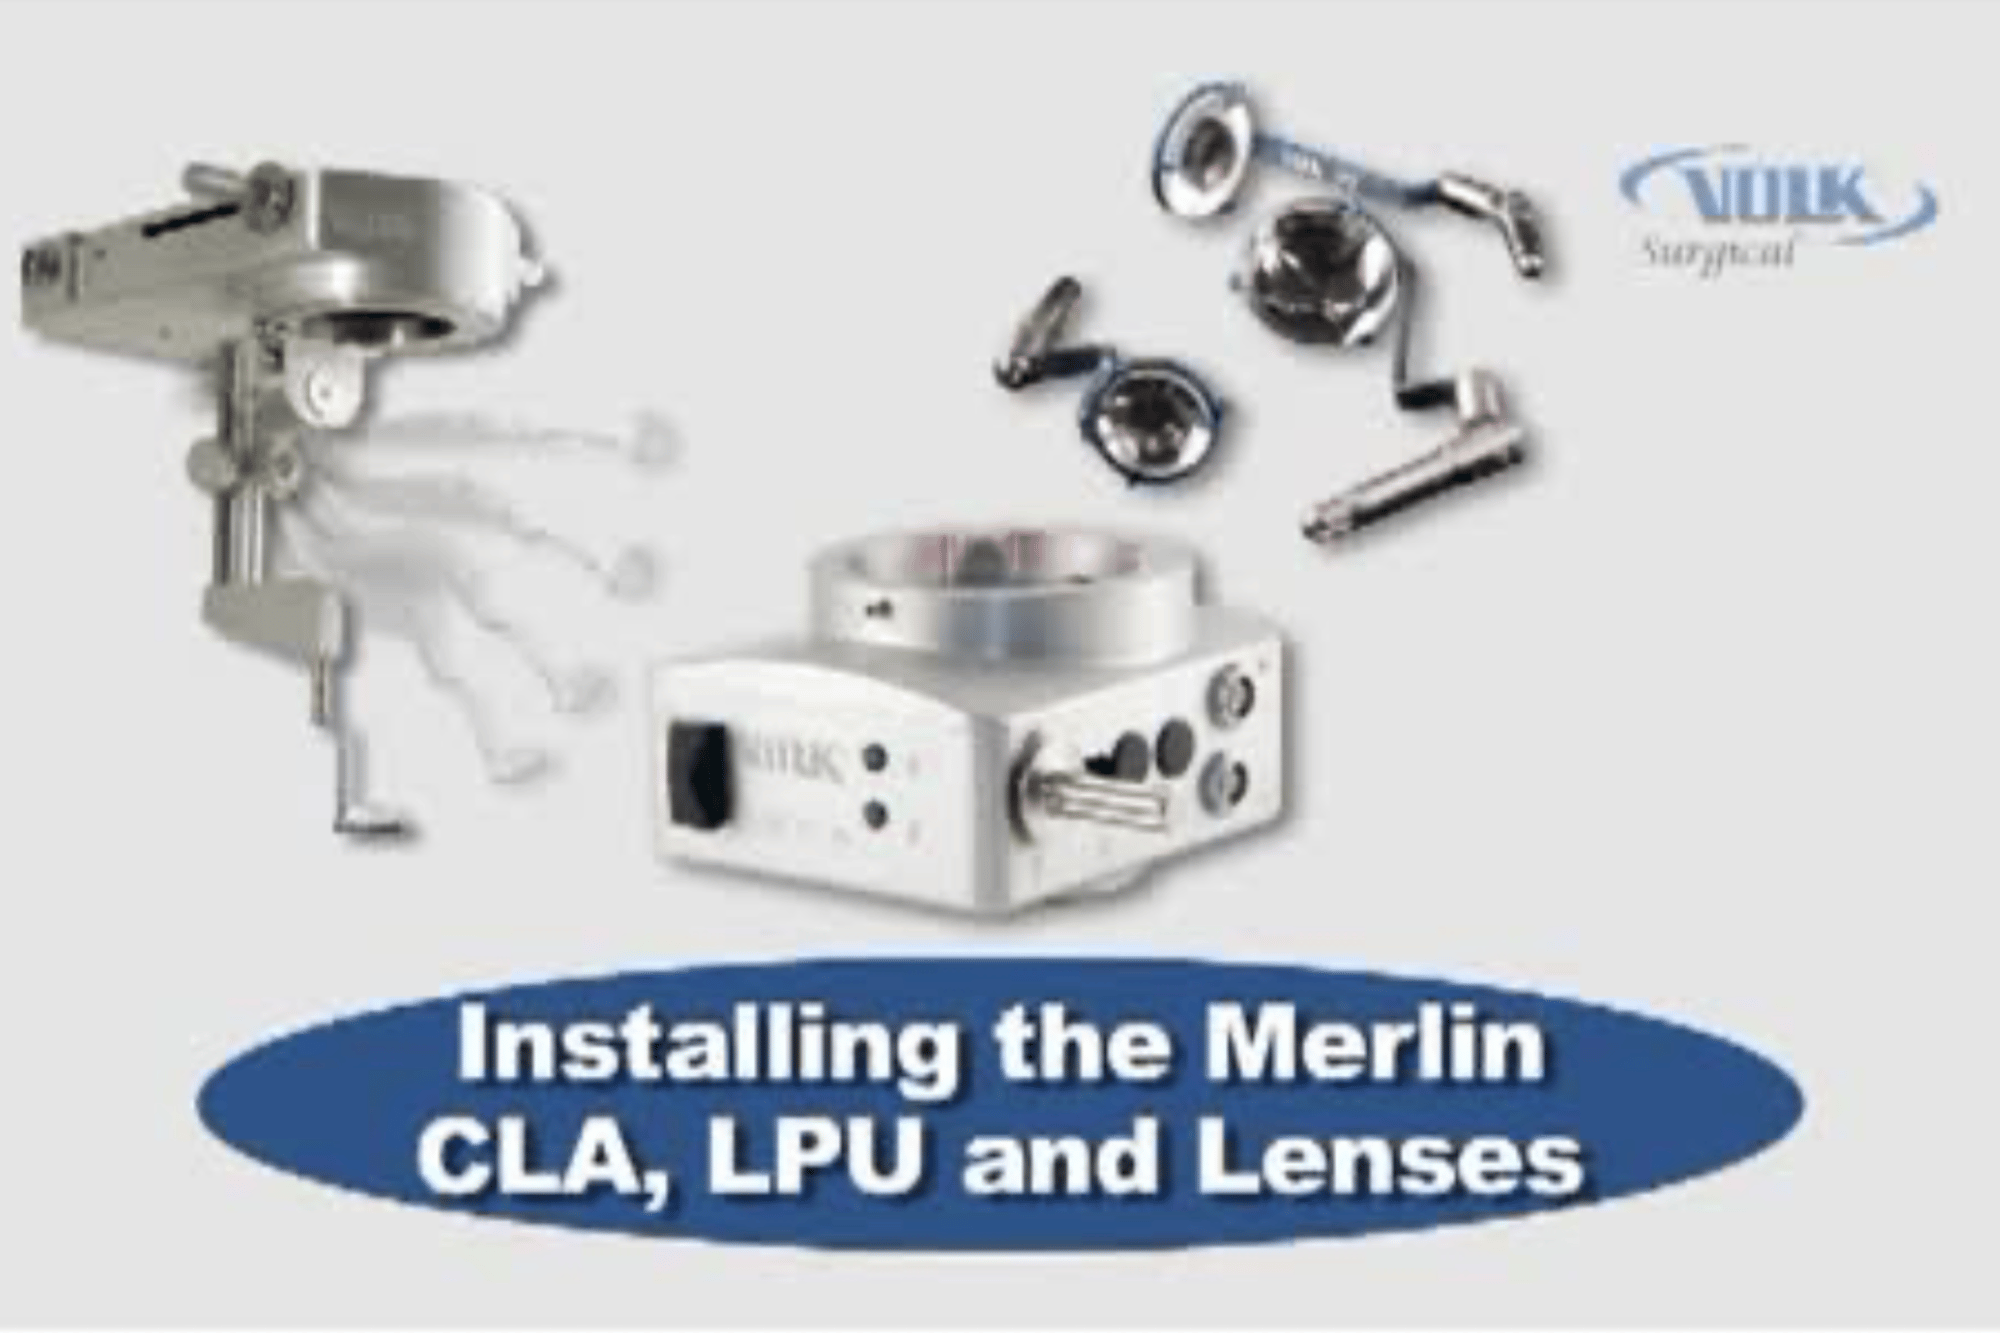 CLA, LPU, and Lenses